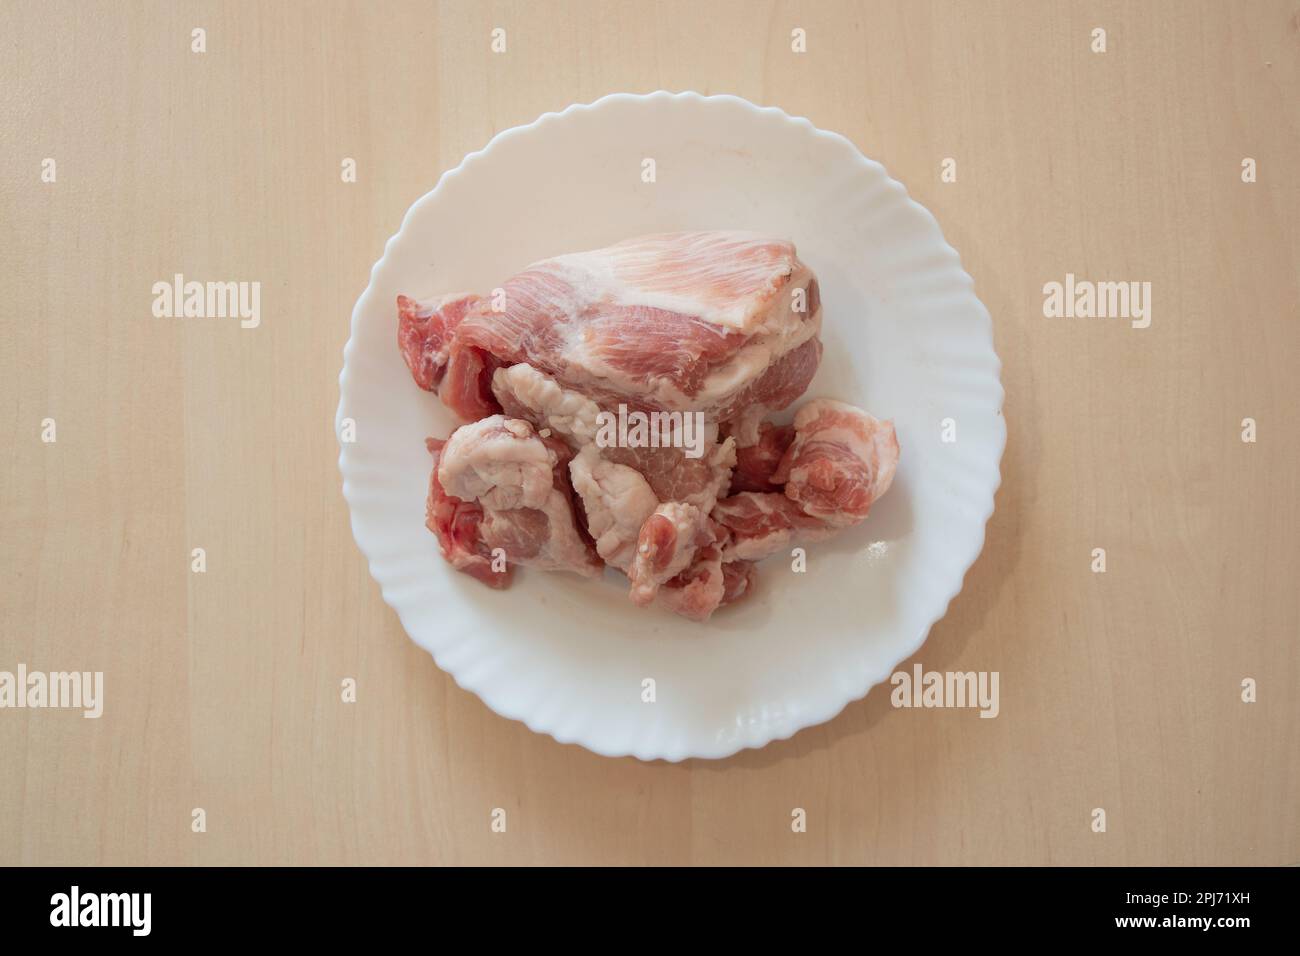 un morceau de porc cru se trouve dans une assiette blanche sur la table Banque D'Images